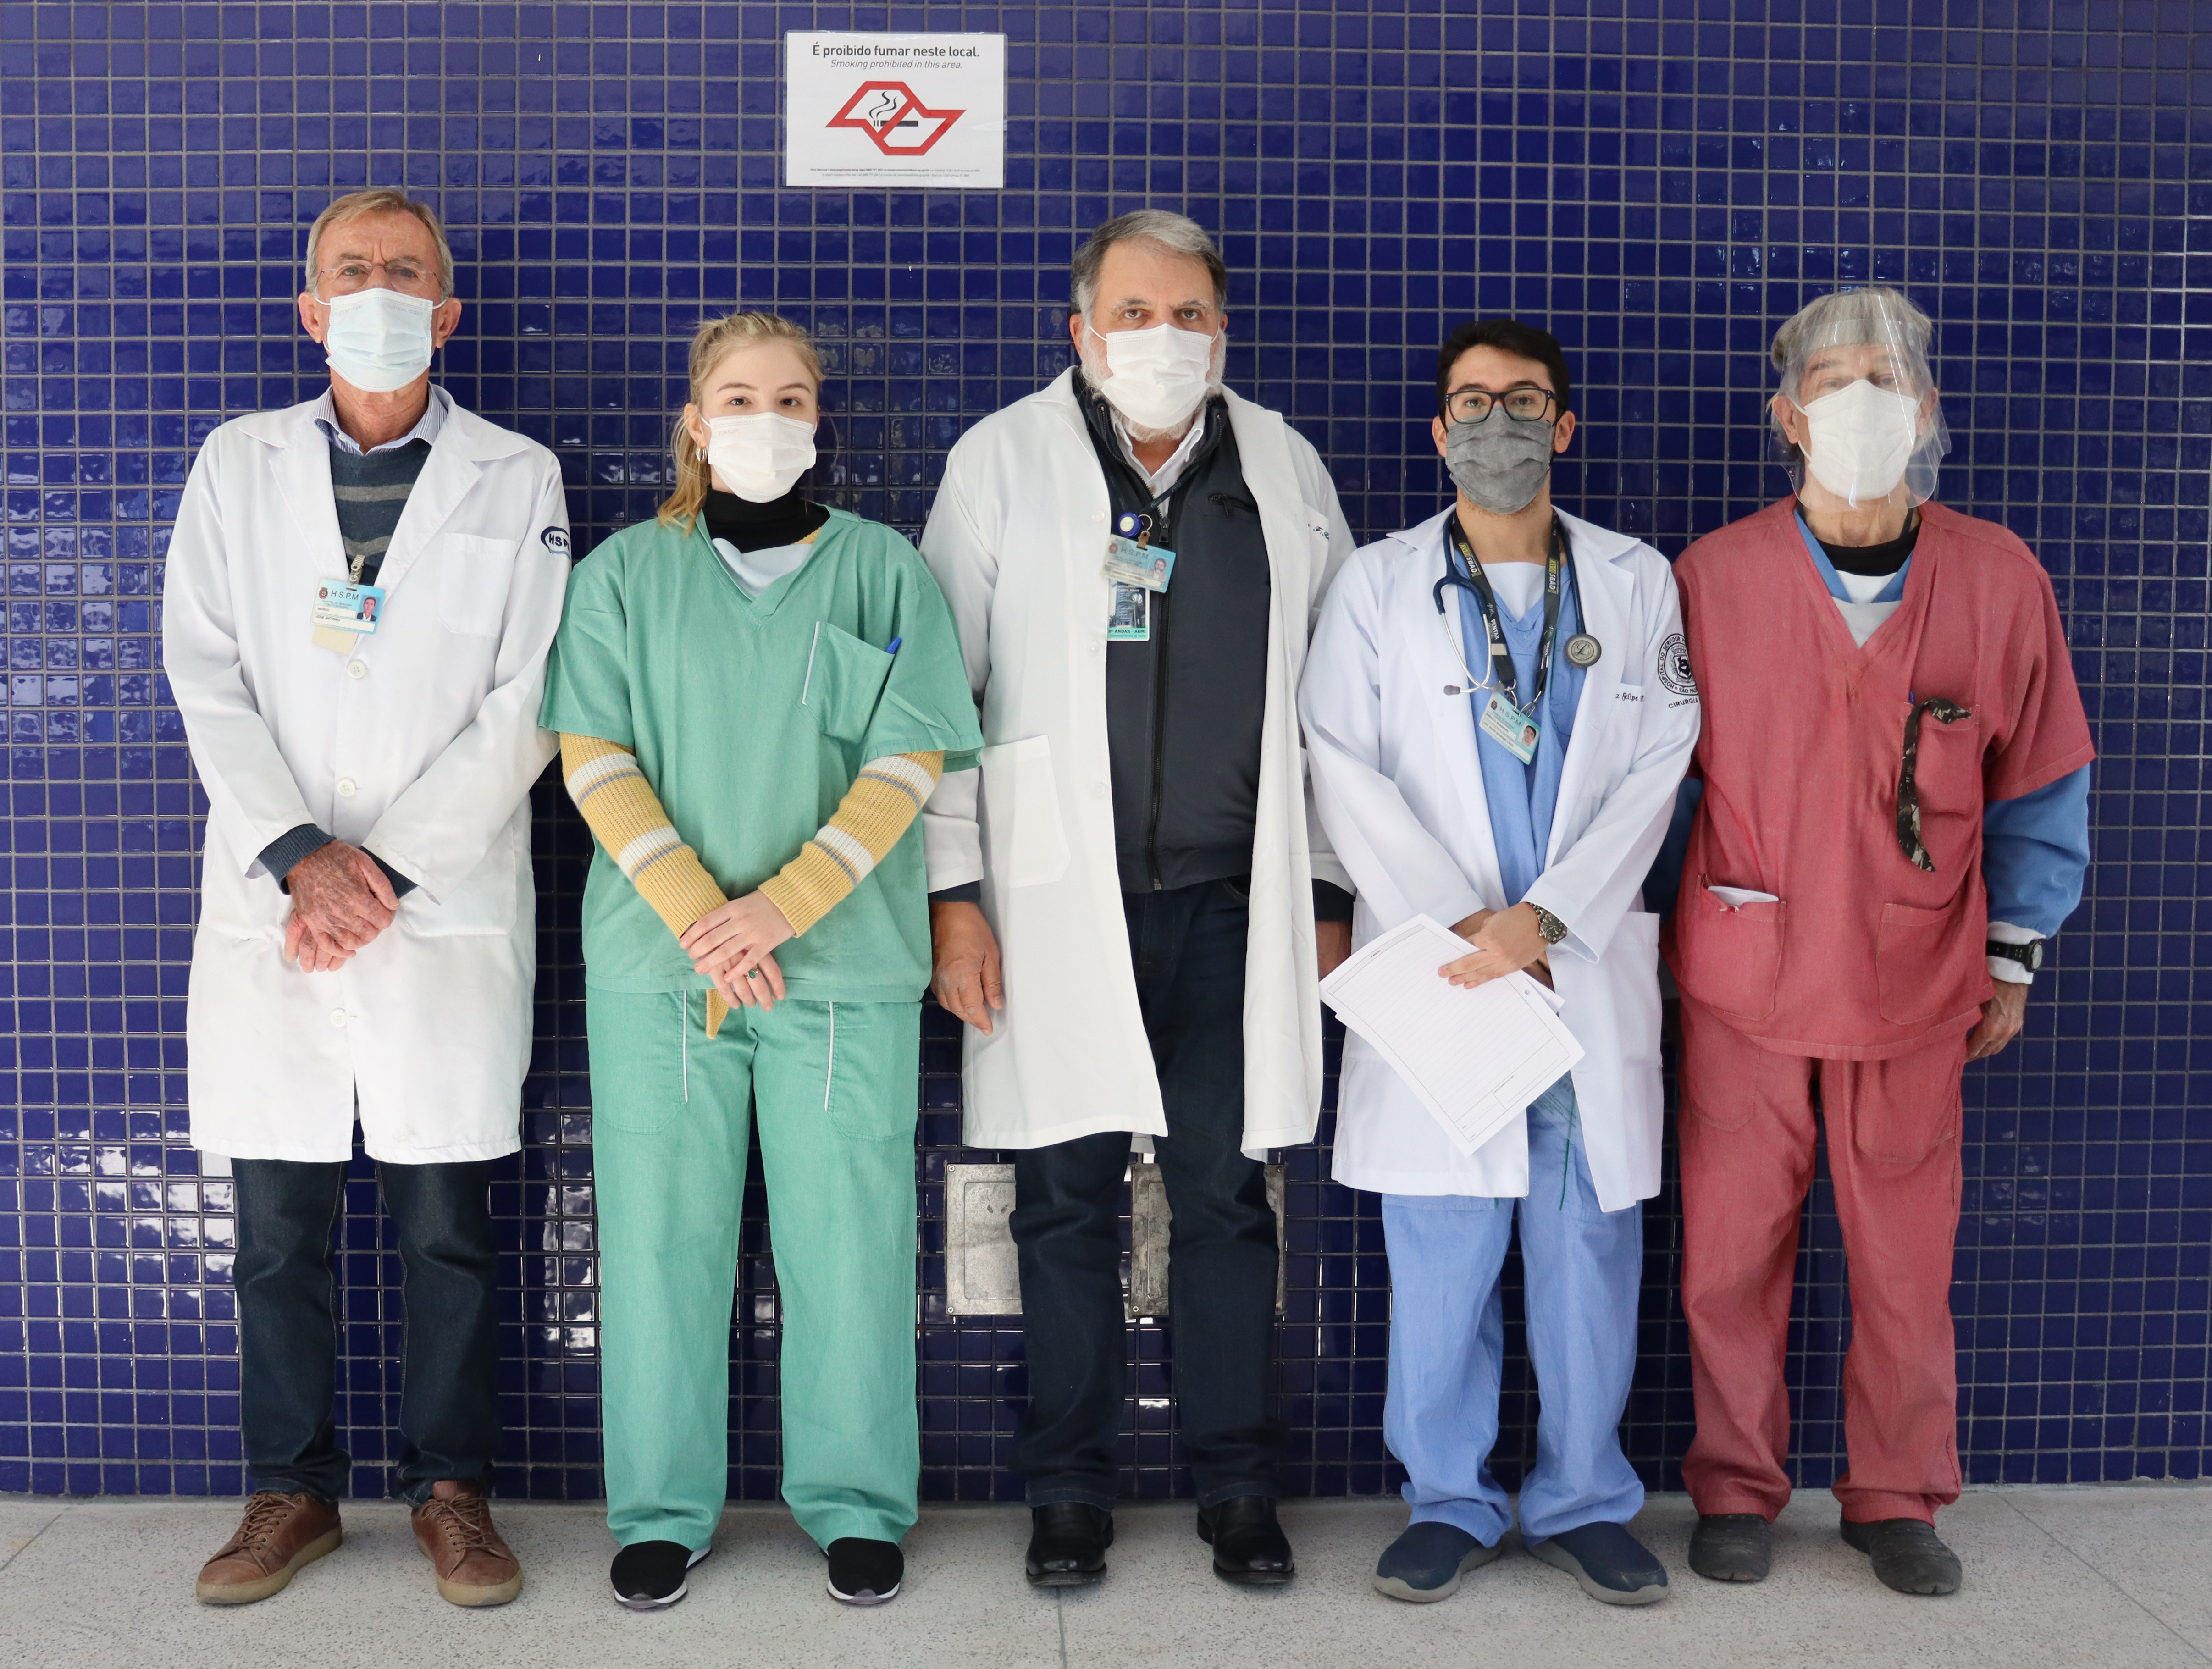 Foto de cinco cirurgiões do hospital em frente a uma parede de ladrilho azul escuiro.